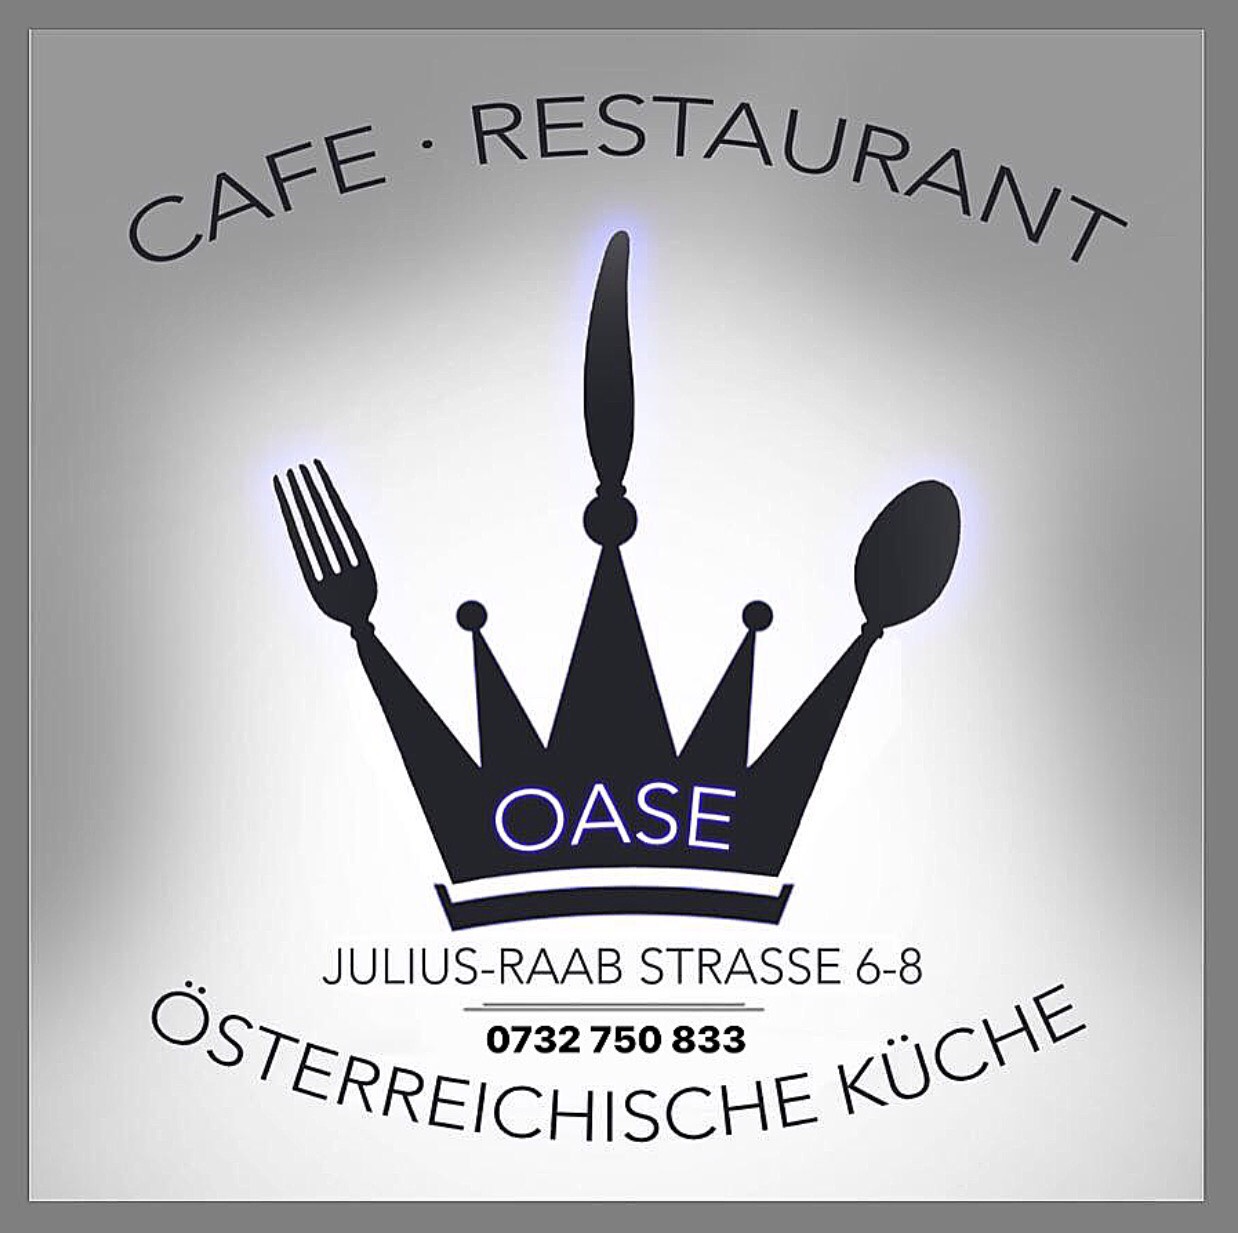 Restaurant Oase eröffnet,01. September 2017